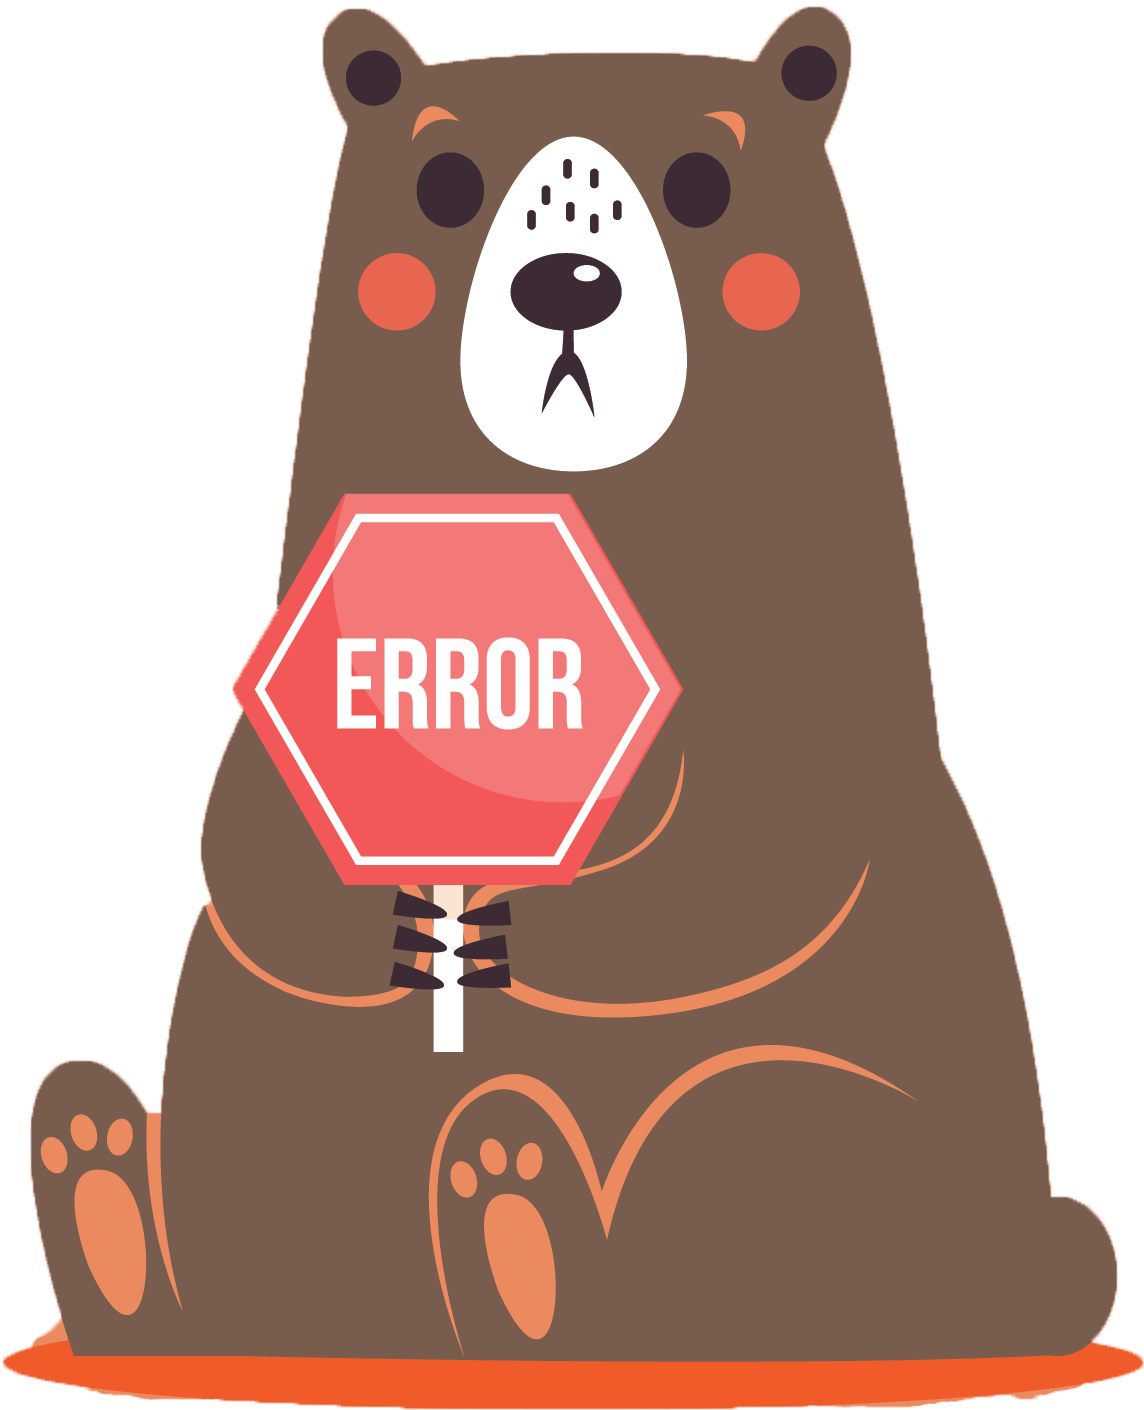 Bear holding an error sign